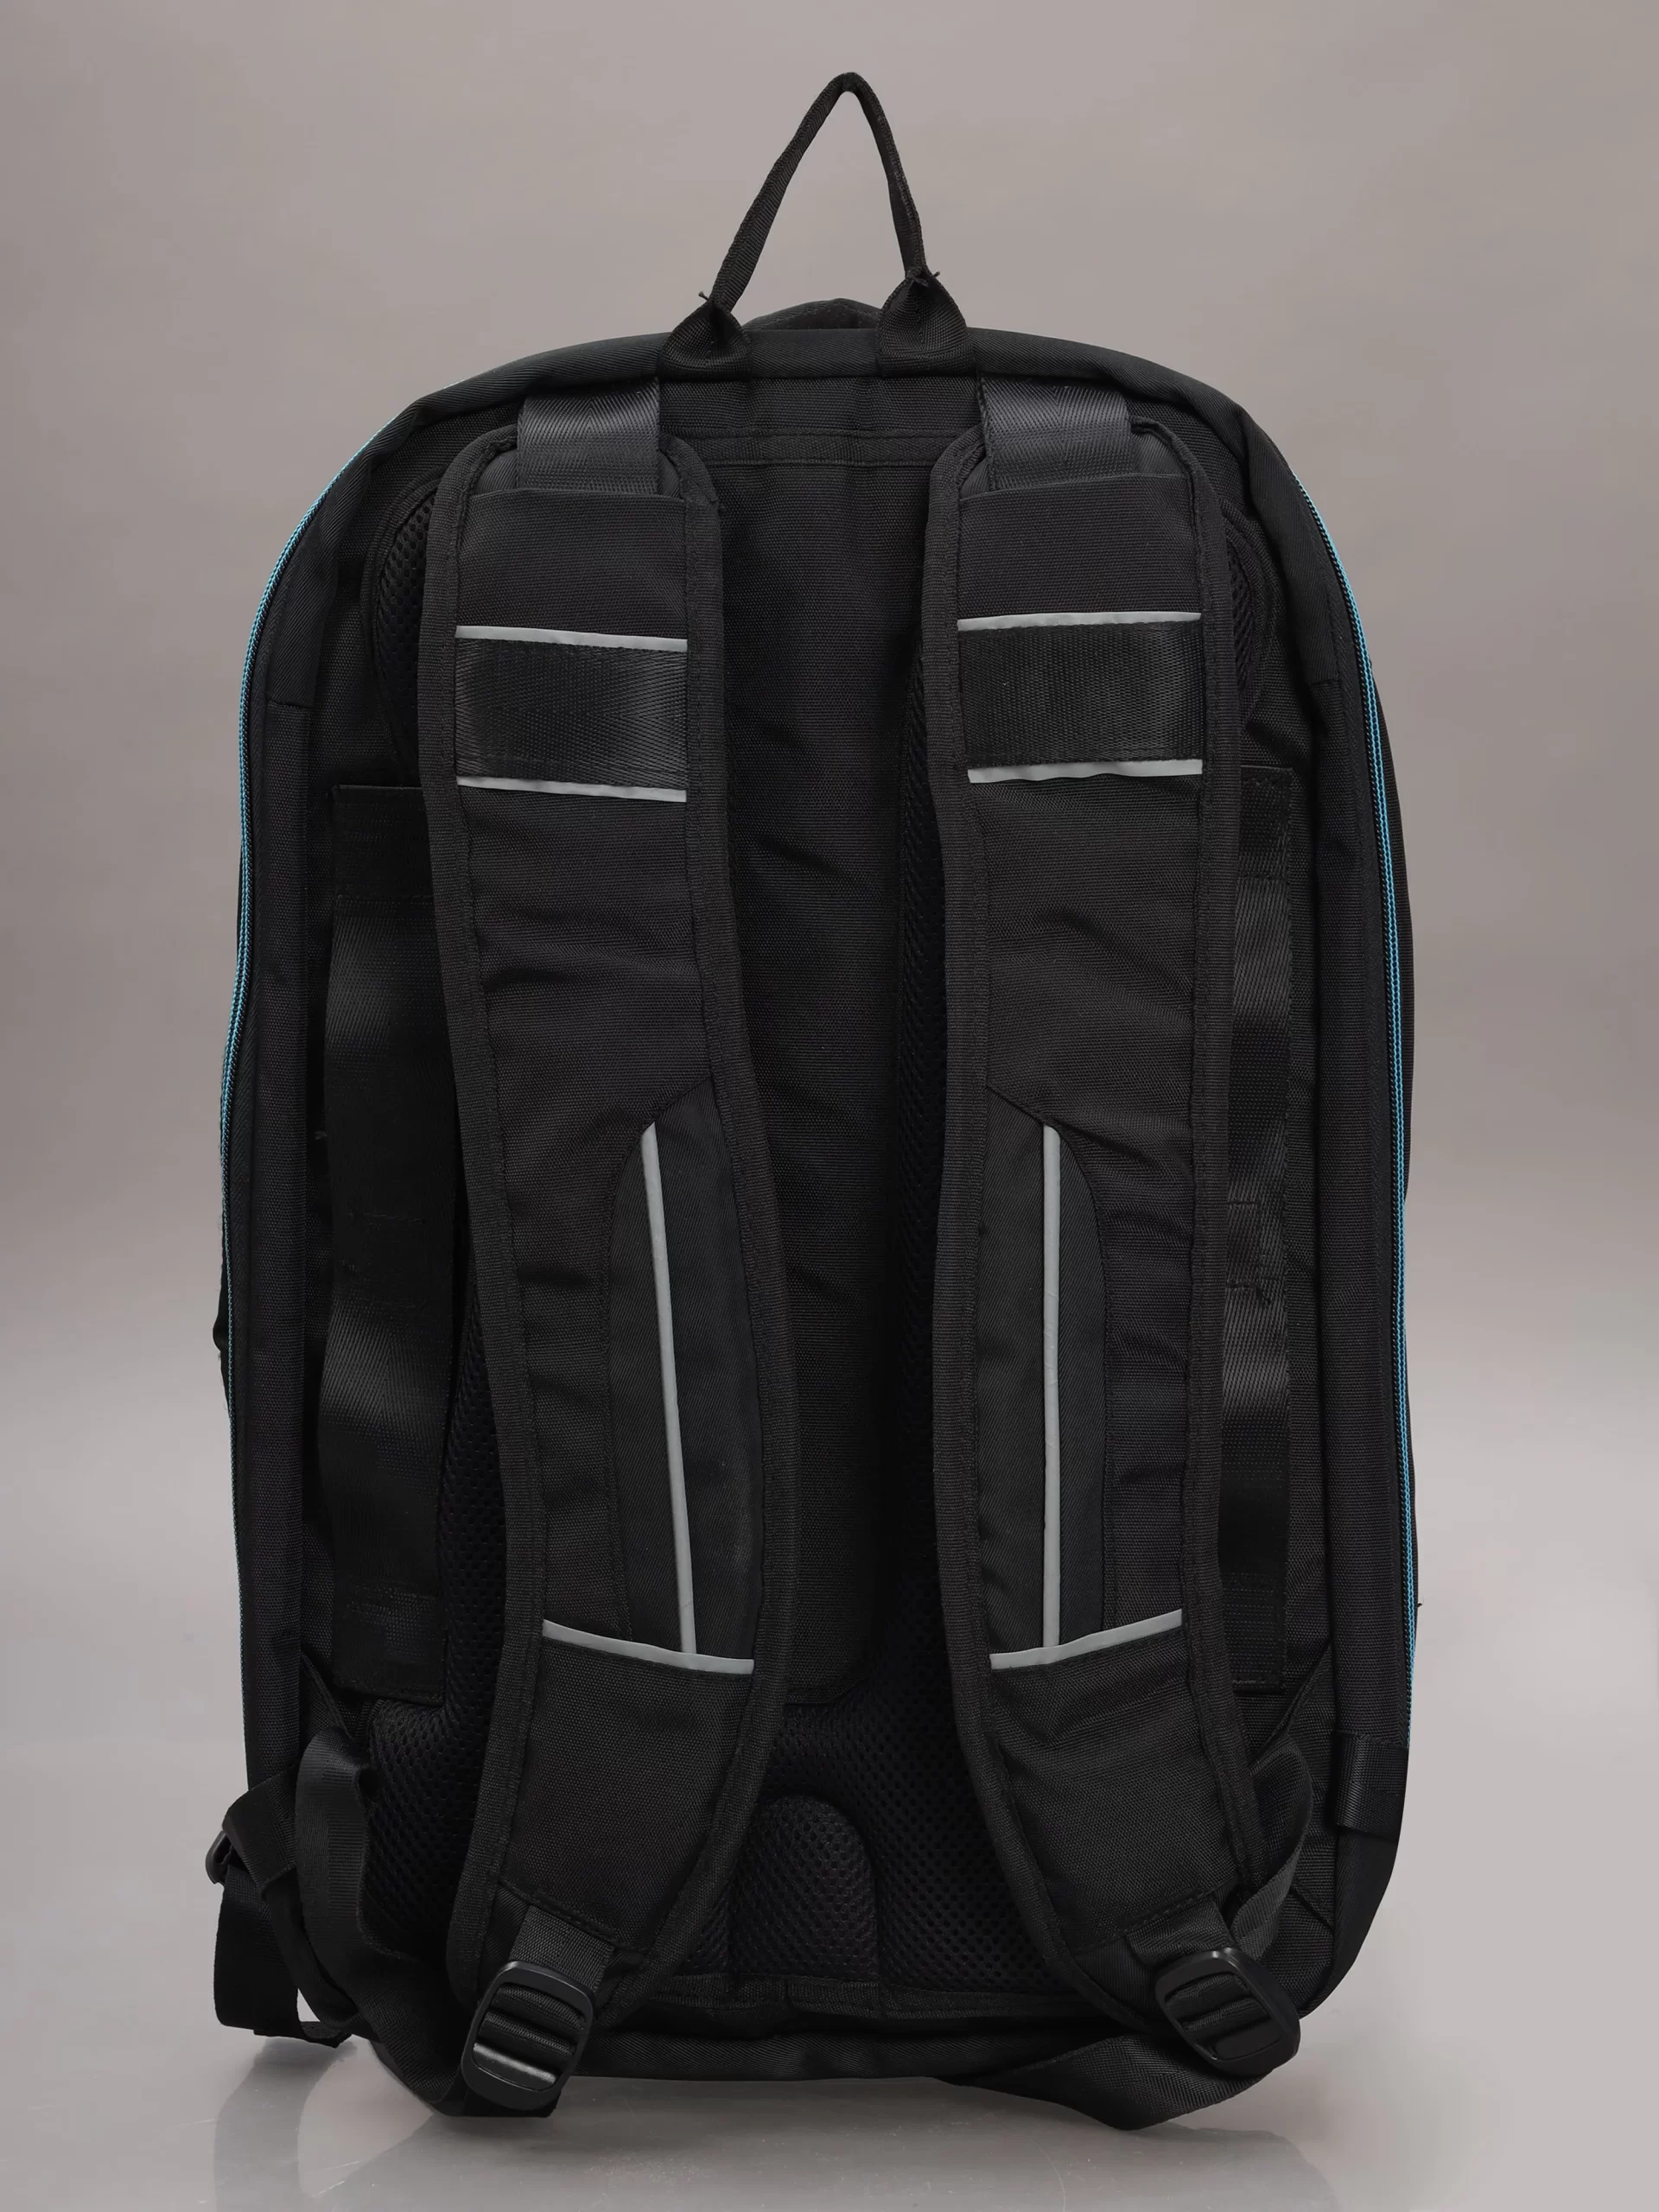 Nova bag-Exterior-image-here